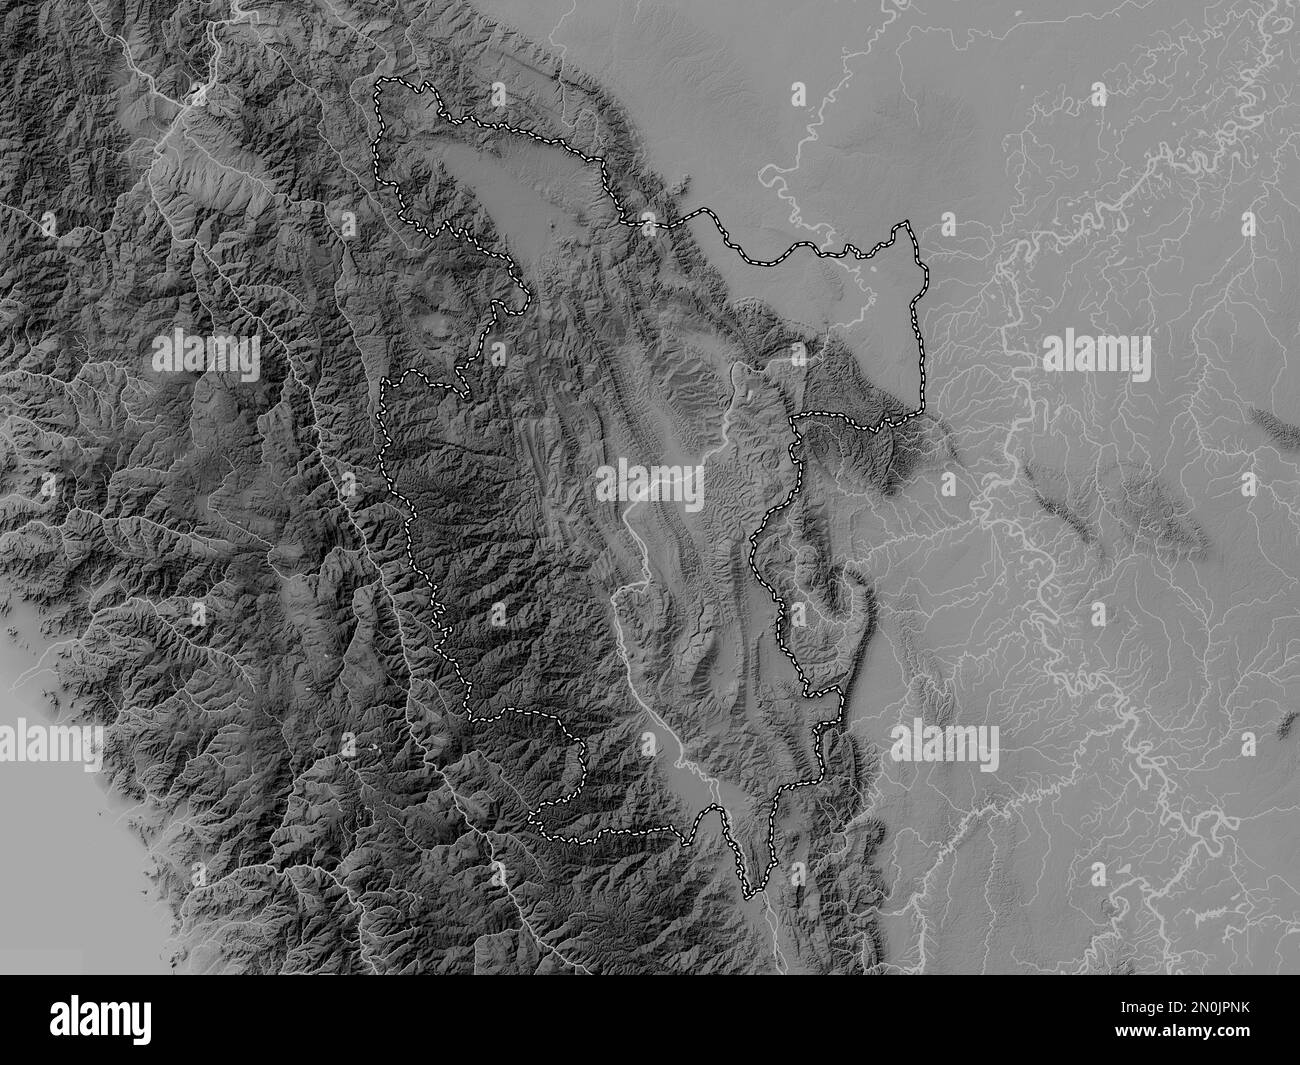 San Martin, région du Pérou. Carte d'altitude en niveaux de gris avec lacs et rivières Banque D'Images